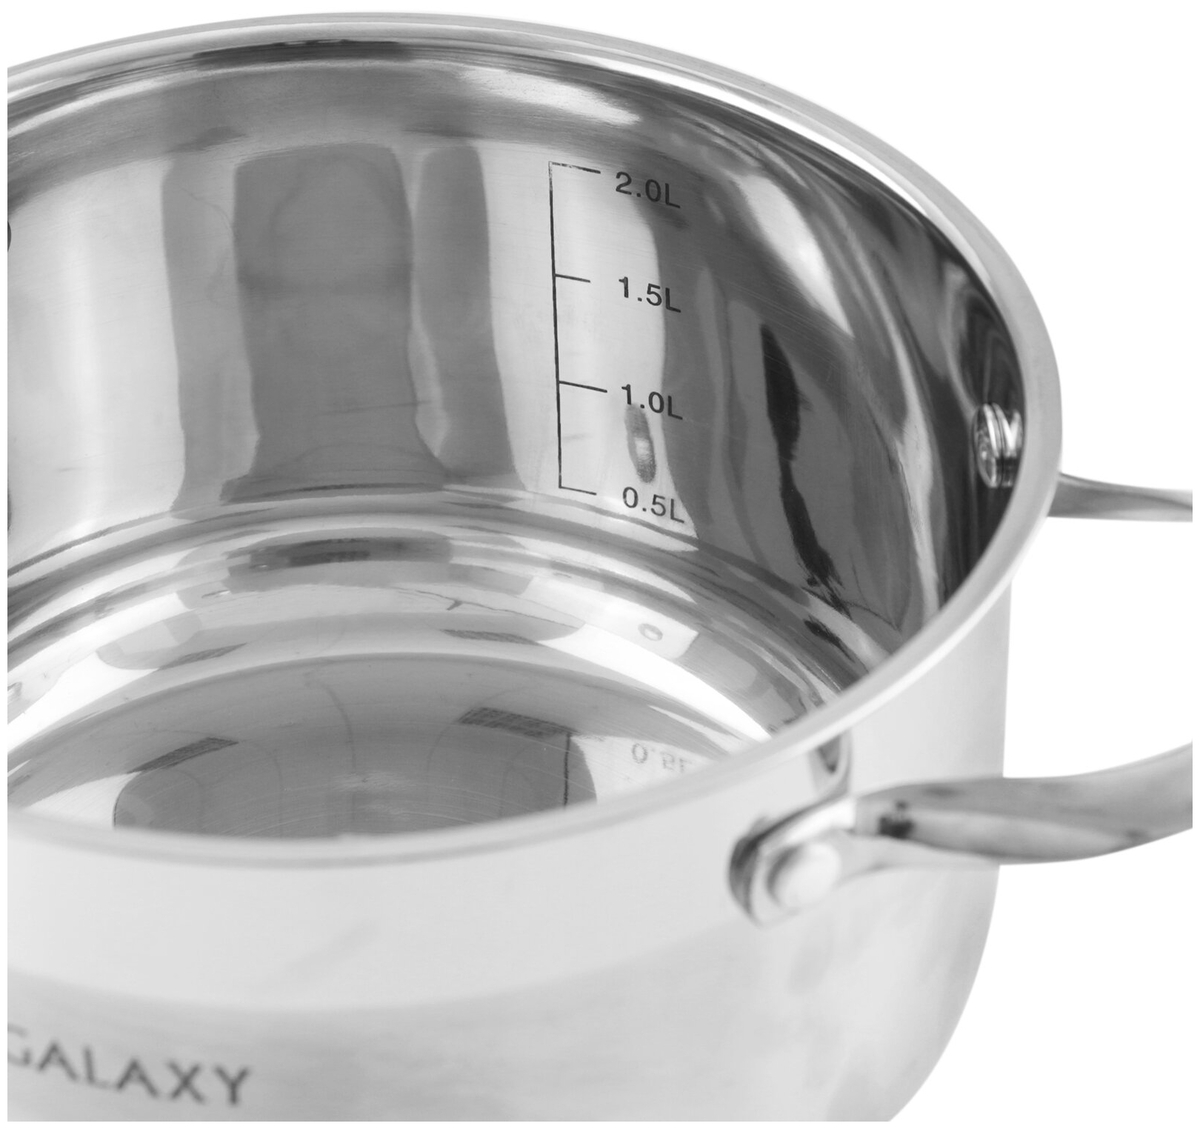 Картинка Набор посуды GALAXY GL 9506 8 предметов